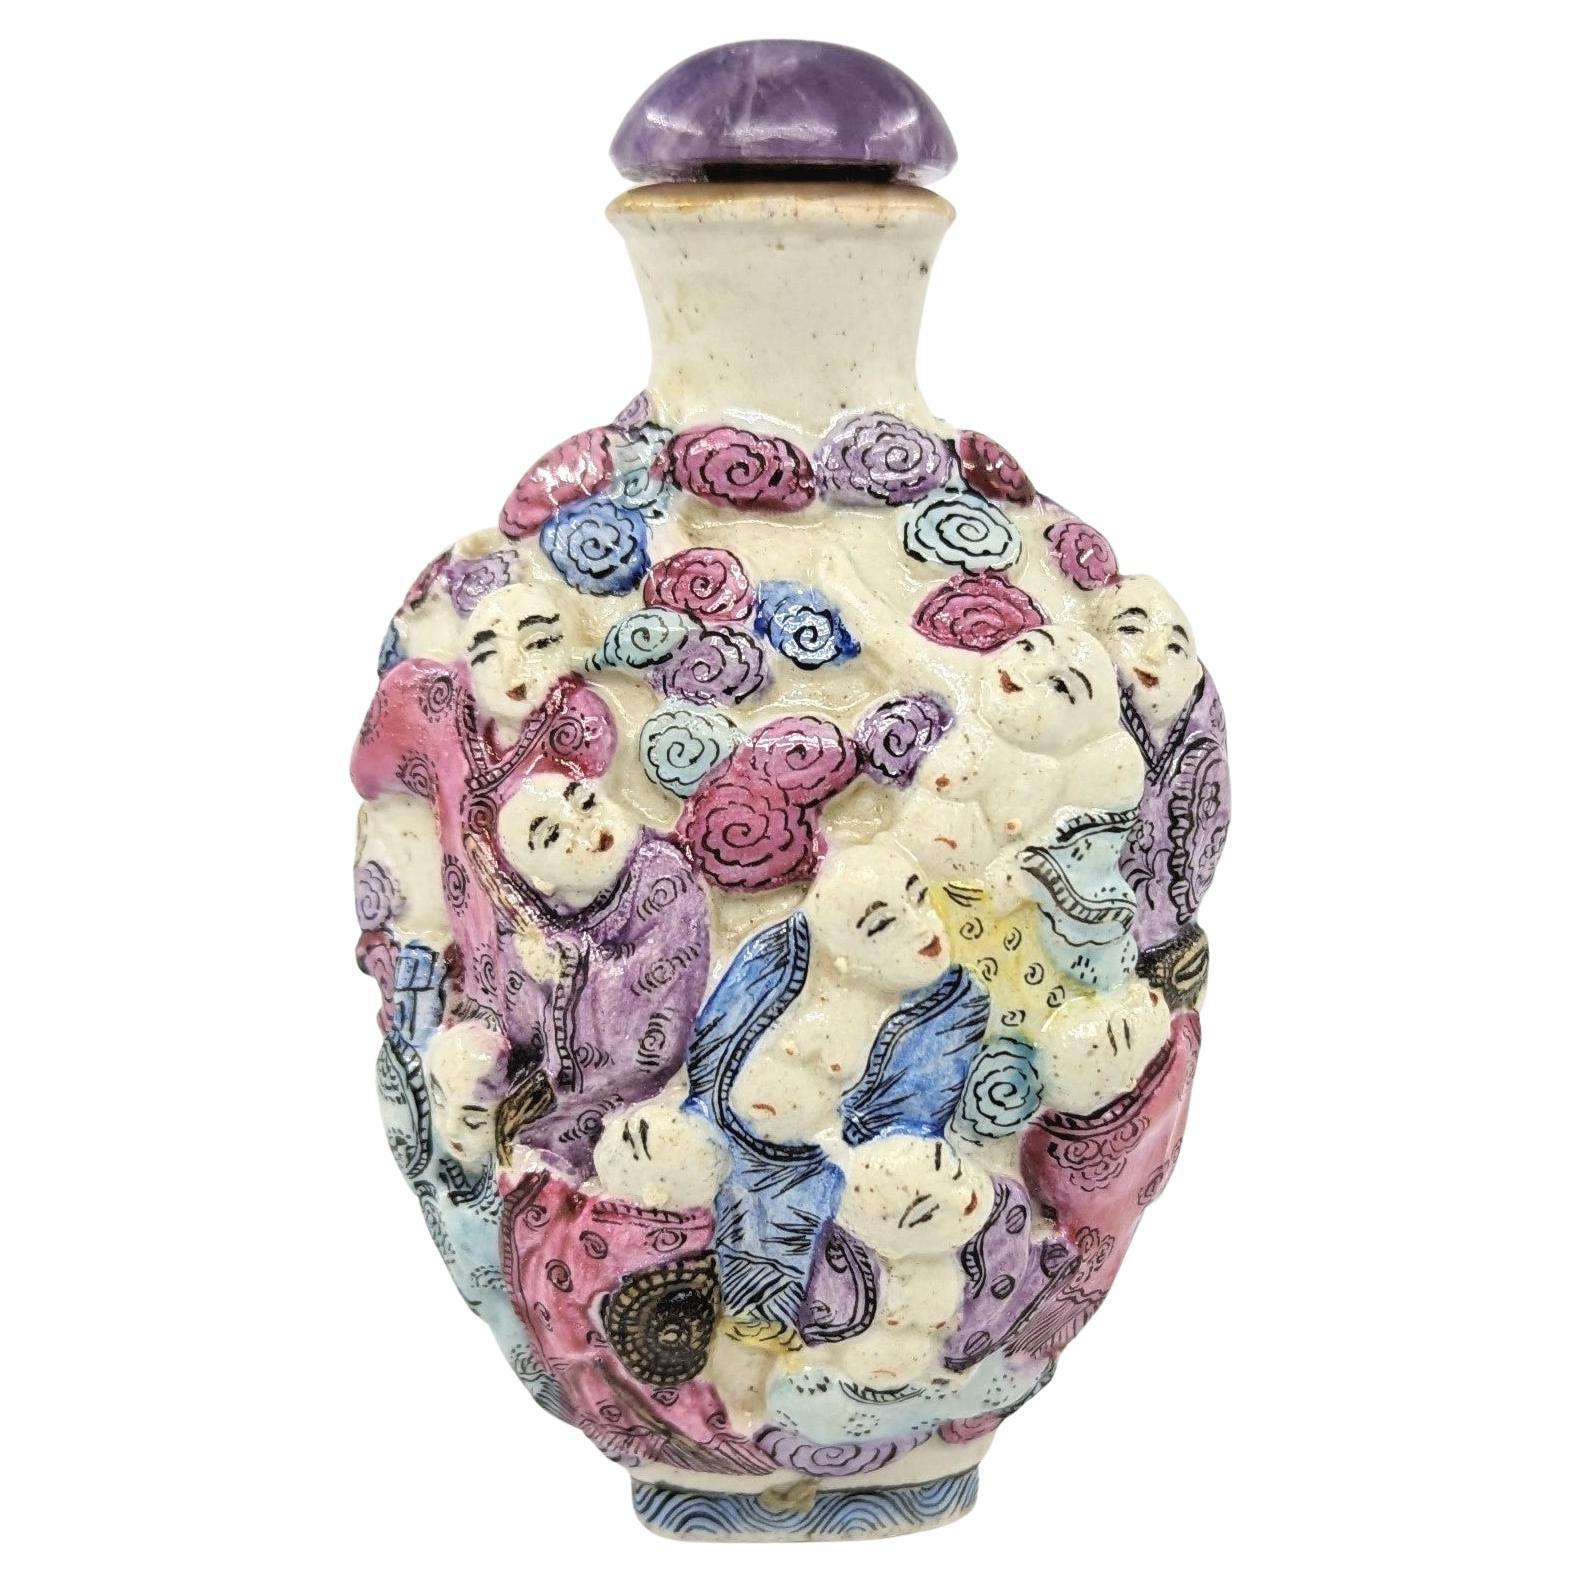 Antike chinesische Schnupftabakflasche aus gegossenem Porzellan in komprimierter, eiförmiger Form, fein dekoriert mit 18 Arhats Luohan in einer durchgehenden Szene in Hochrelief, mit einem sich nach außen erweiternden Hals und einem mit Gold